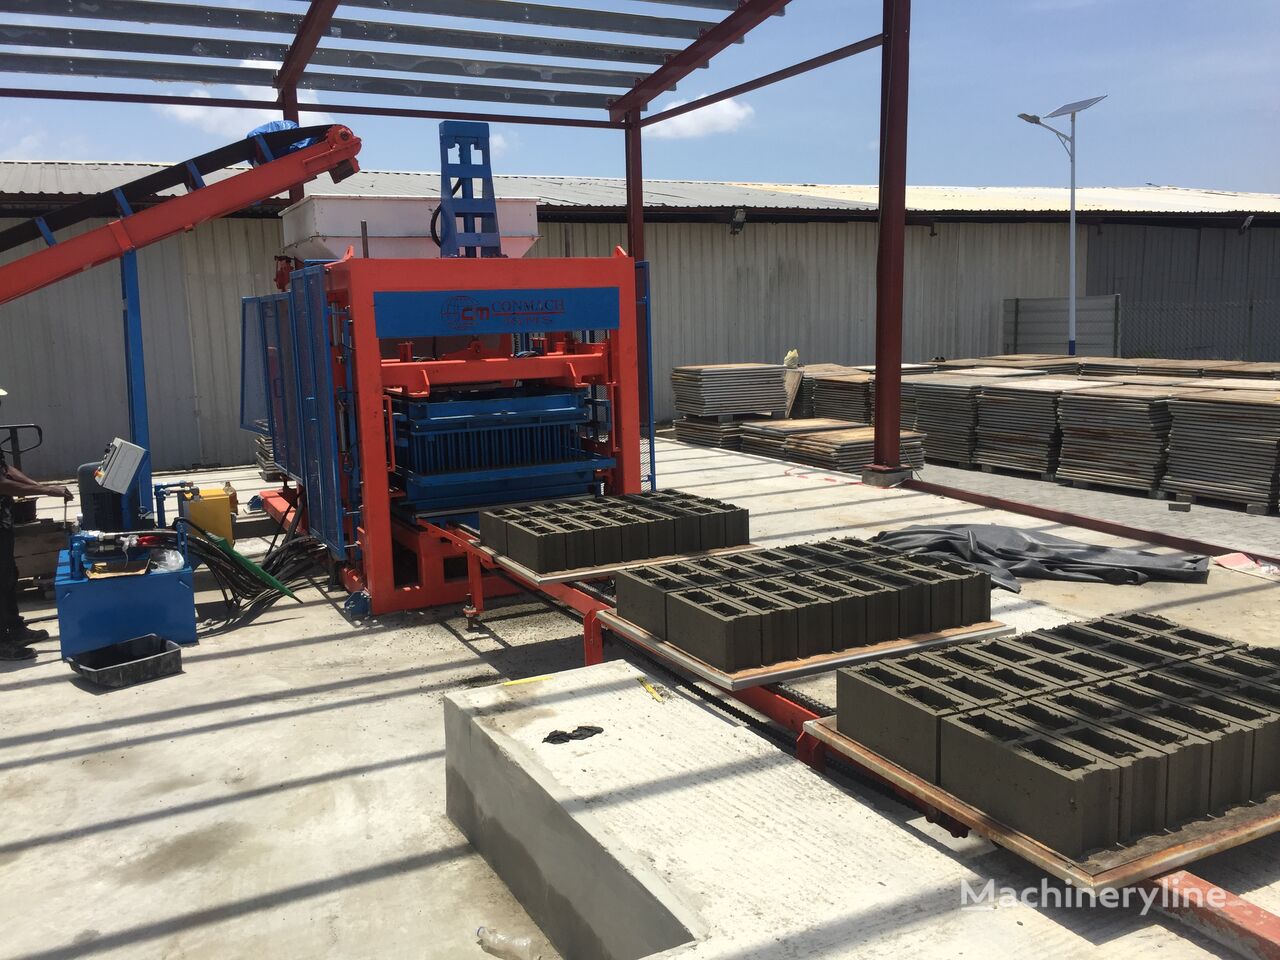 новое оборудование для производства бетонных блоков Conmach BlockKing-36MS Concrete Block Making Machine -12.000 units/shift